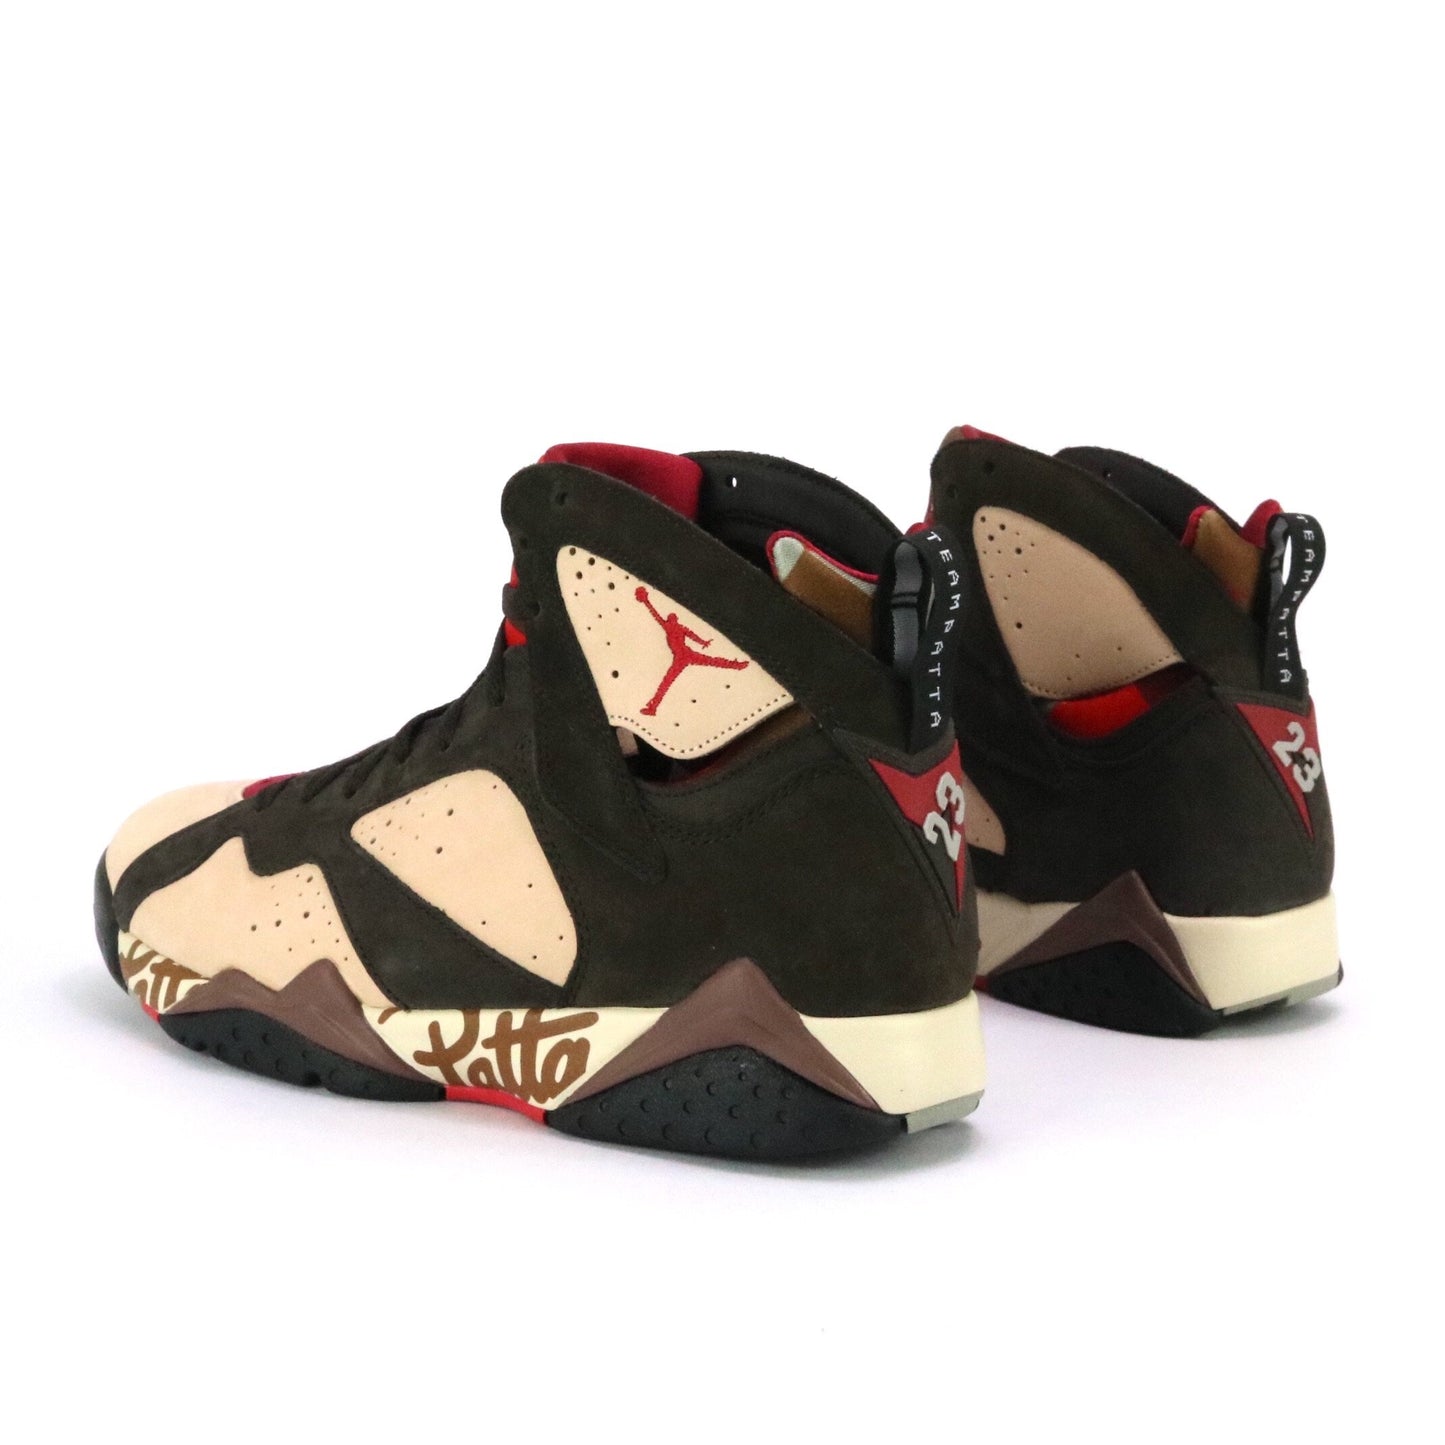 Air Jordan x Patta 7 Retro Patta Shimmer